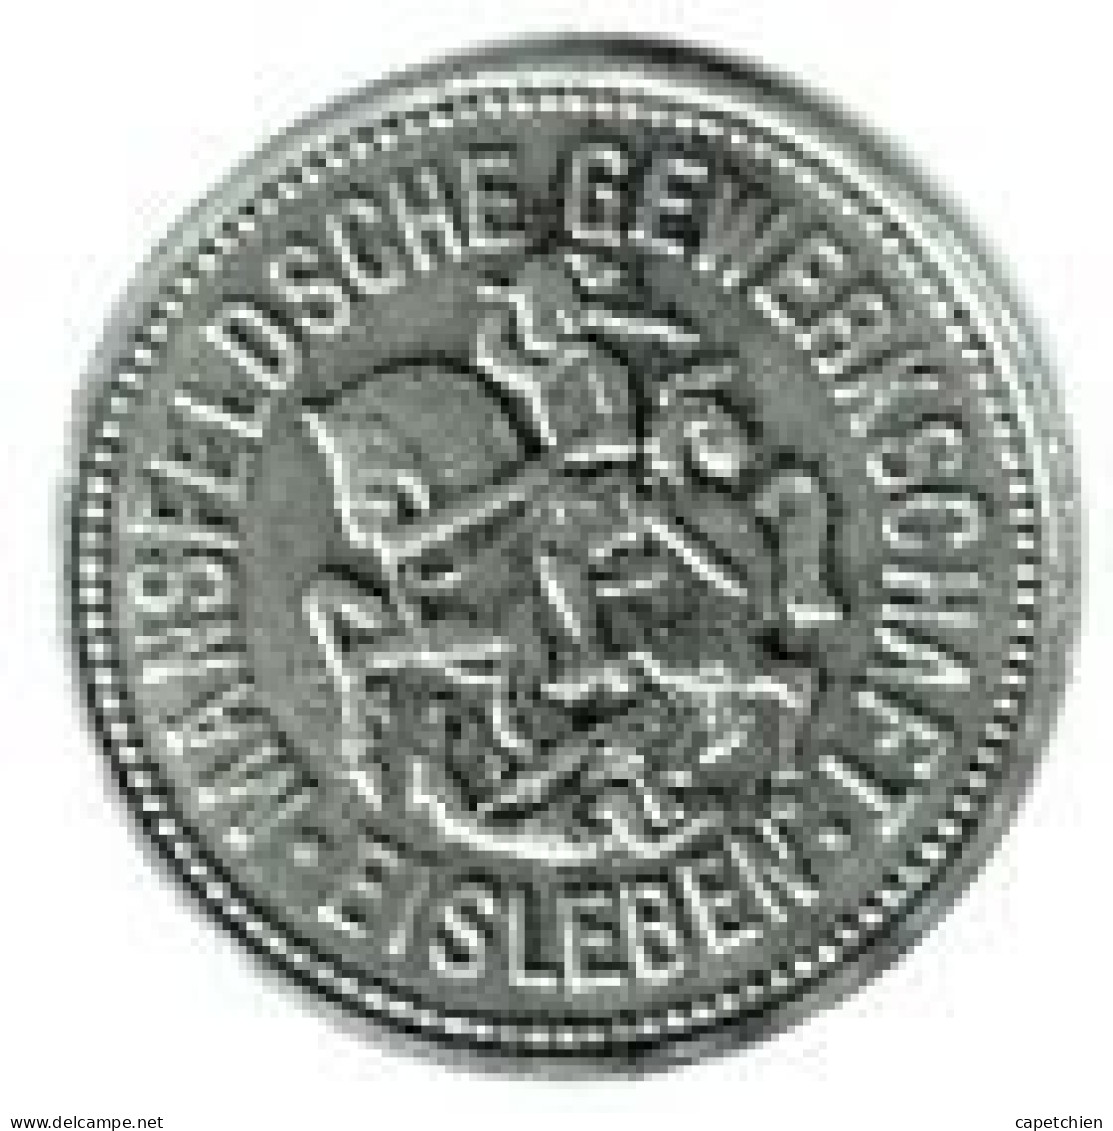 ALLEMAGNE / NOTGELD / MANSFELDSCHE GEWERKSCHAFT EISLEBEN / 10 PFENNIG / 1917 / ZINC / 22.85 Mm  / 3.14 G - Monétaires/De Nécessité